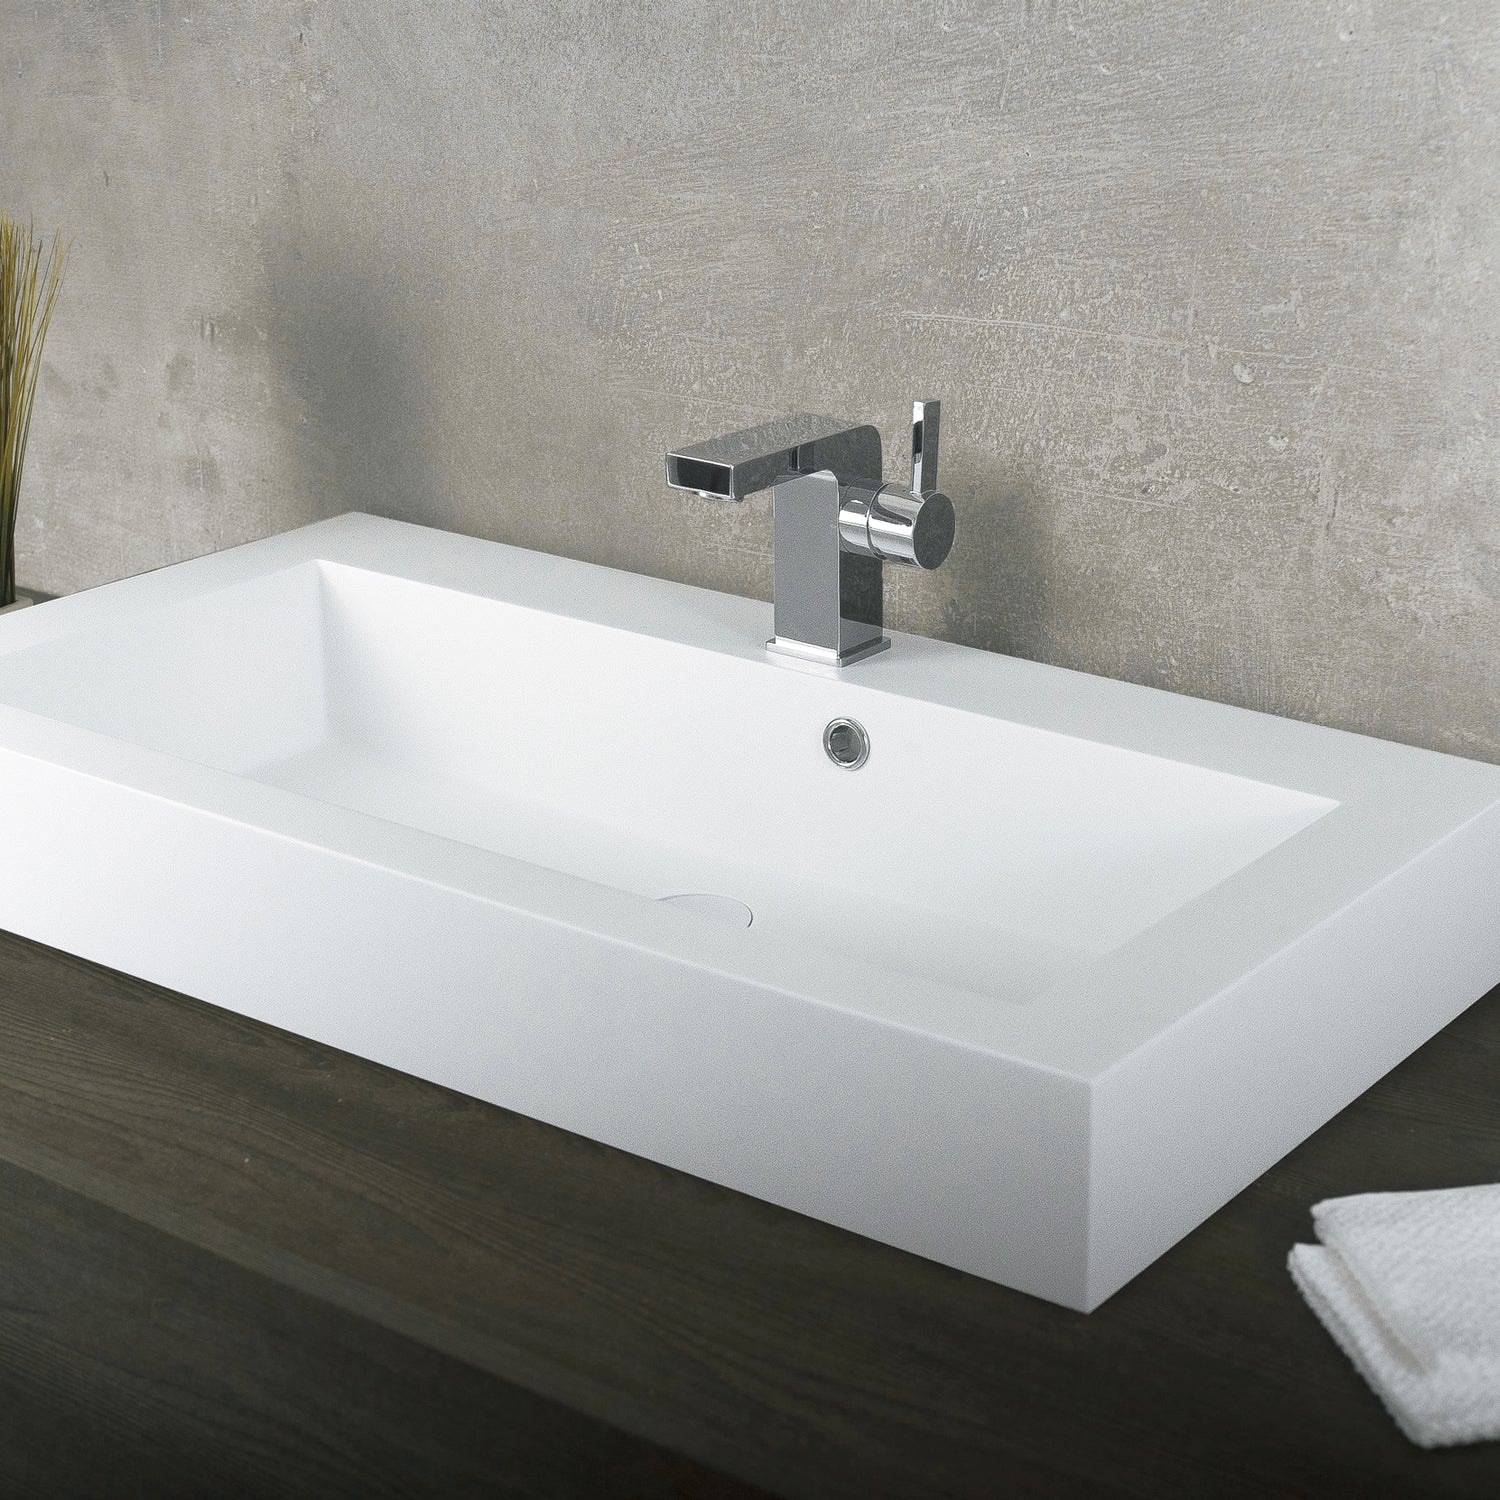 DAX Lavabo rectangular de superficie sólida para baño de un solo tazón, acabado blanco mate, 31-1/3 x 18-1/9 x 6-3/4 pulgadas (DAX-AB-1021)